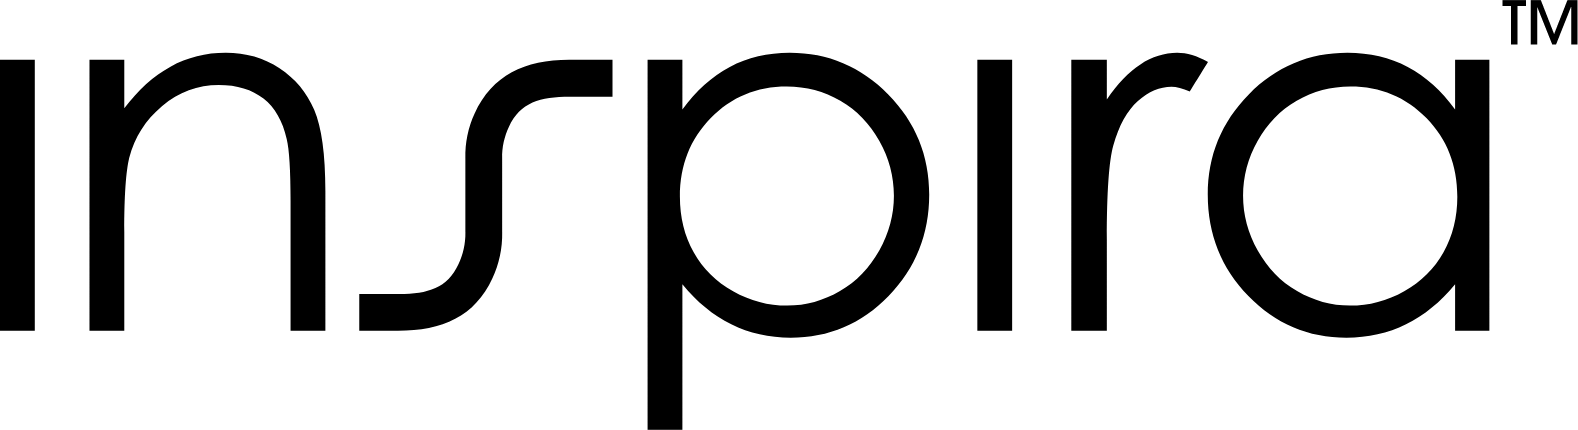 Inspira Technologies logo large (transparent PNG)